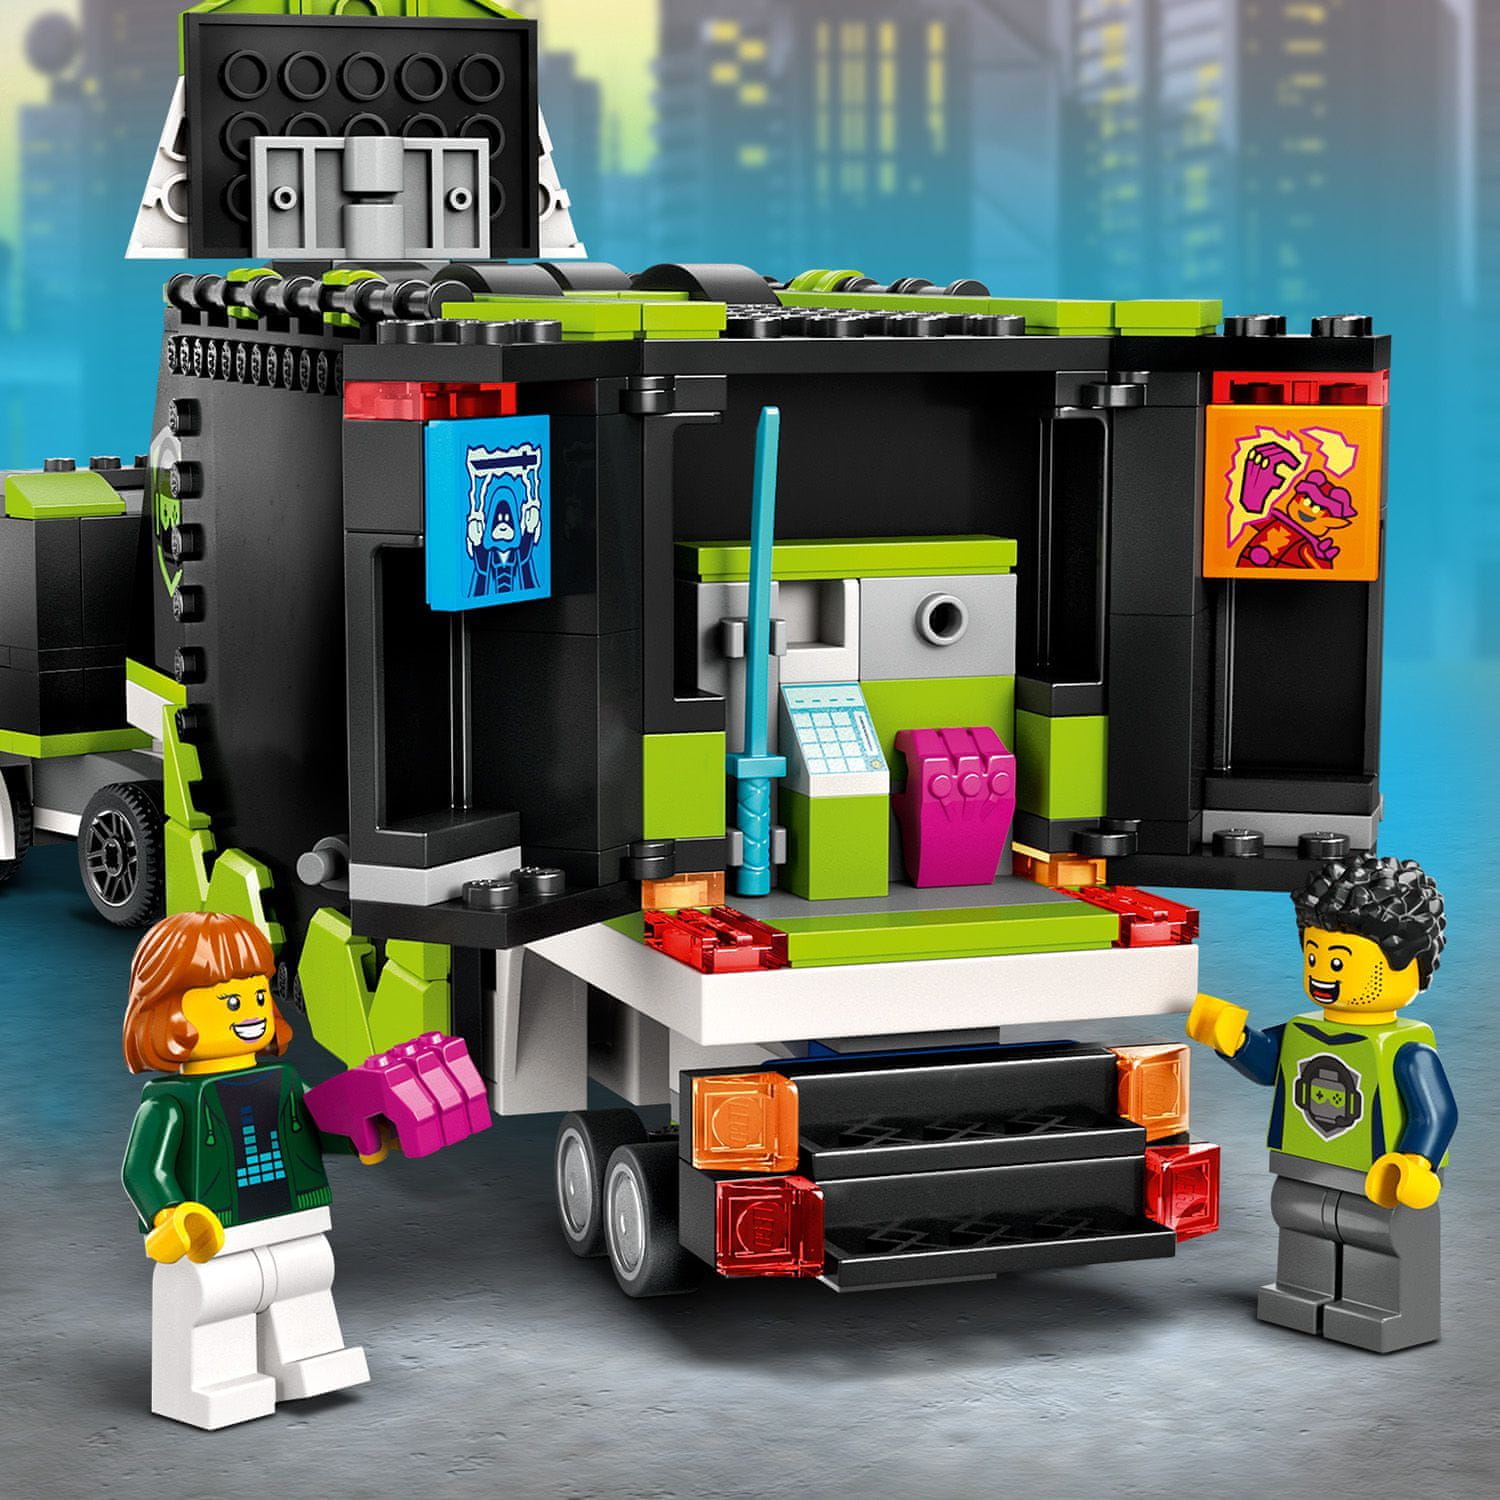 LEGO City 60388 Herný turnaj v kamióne